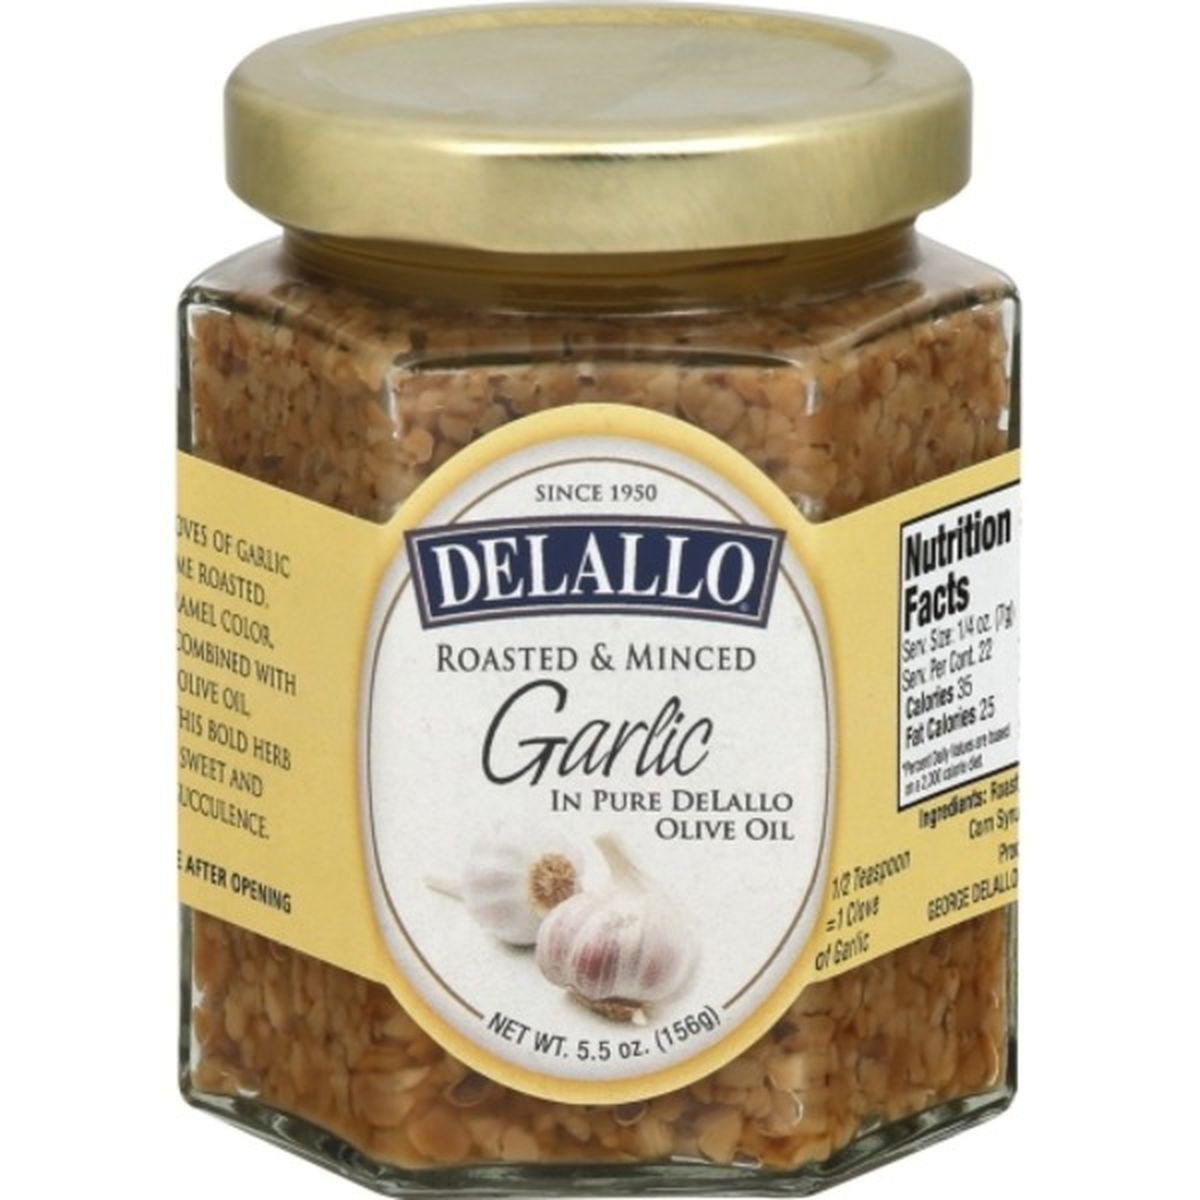 Calories in dellalo Garlic, Roasted & Minced